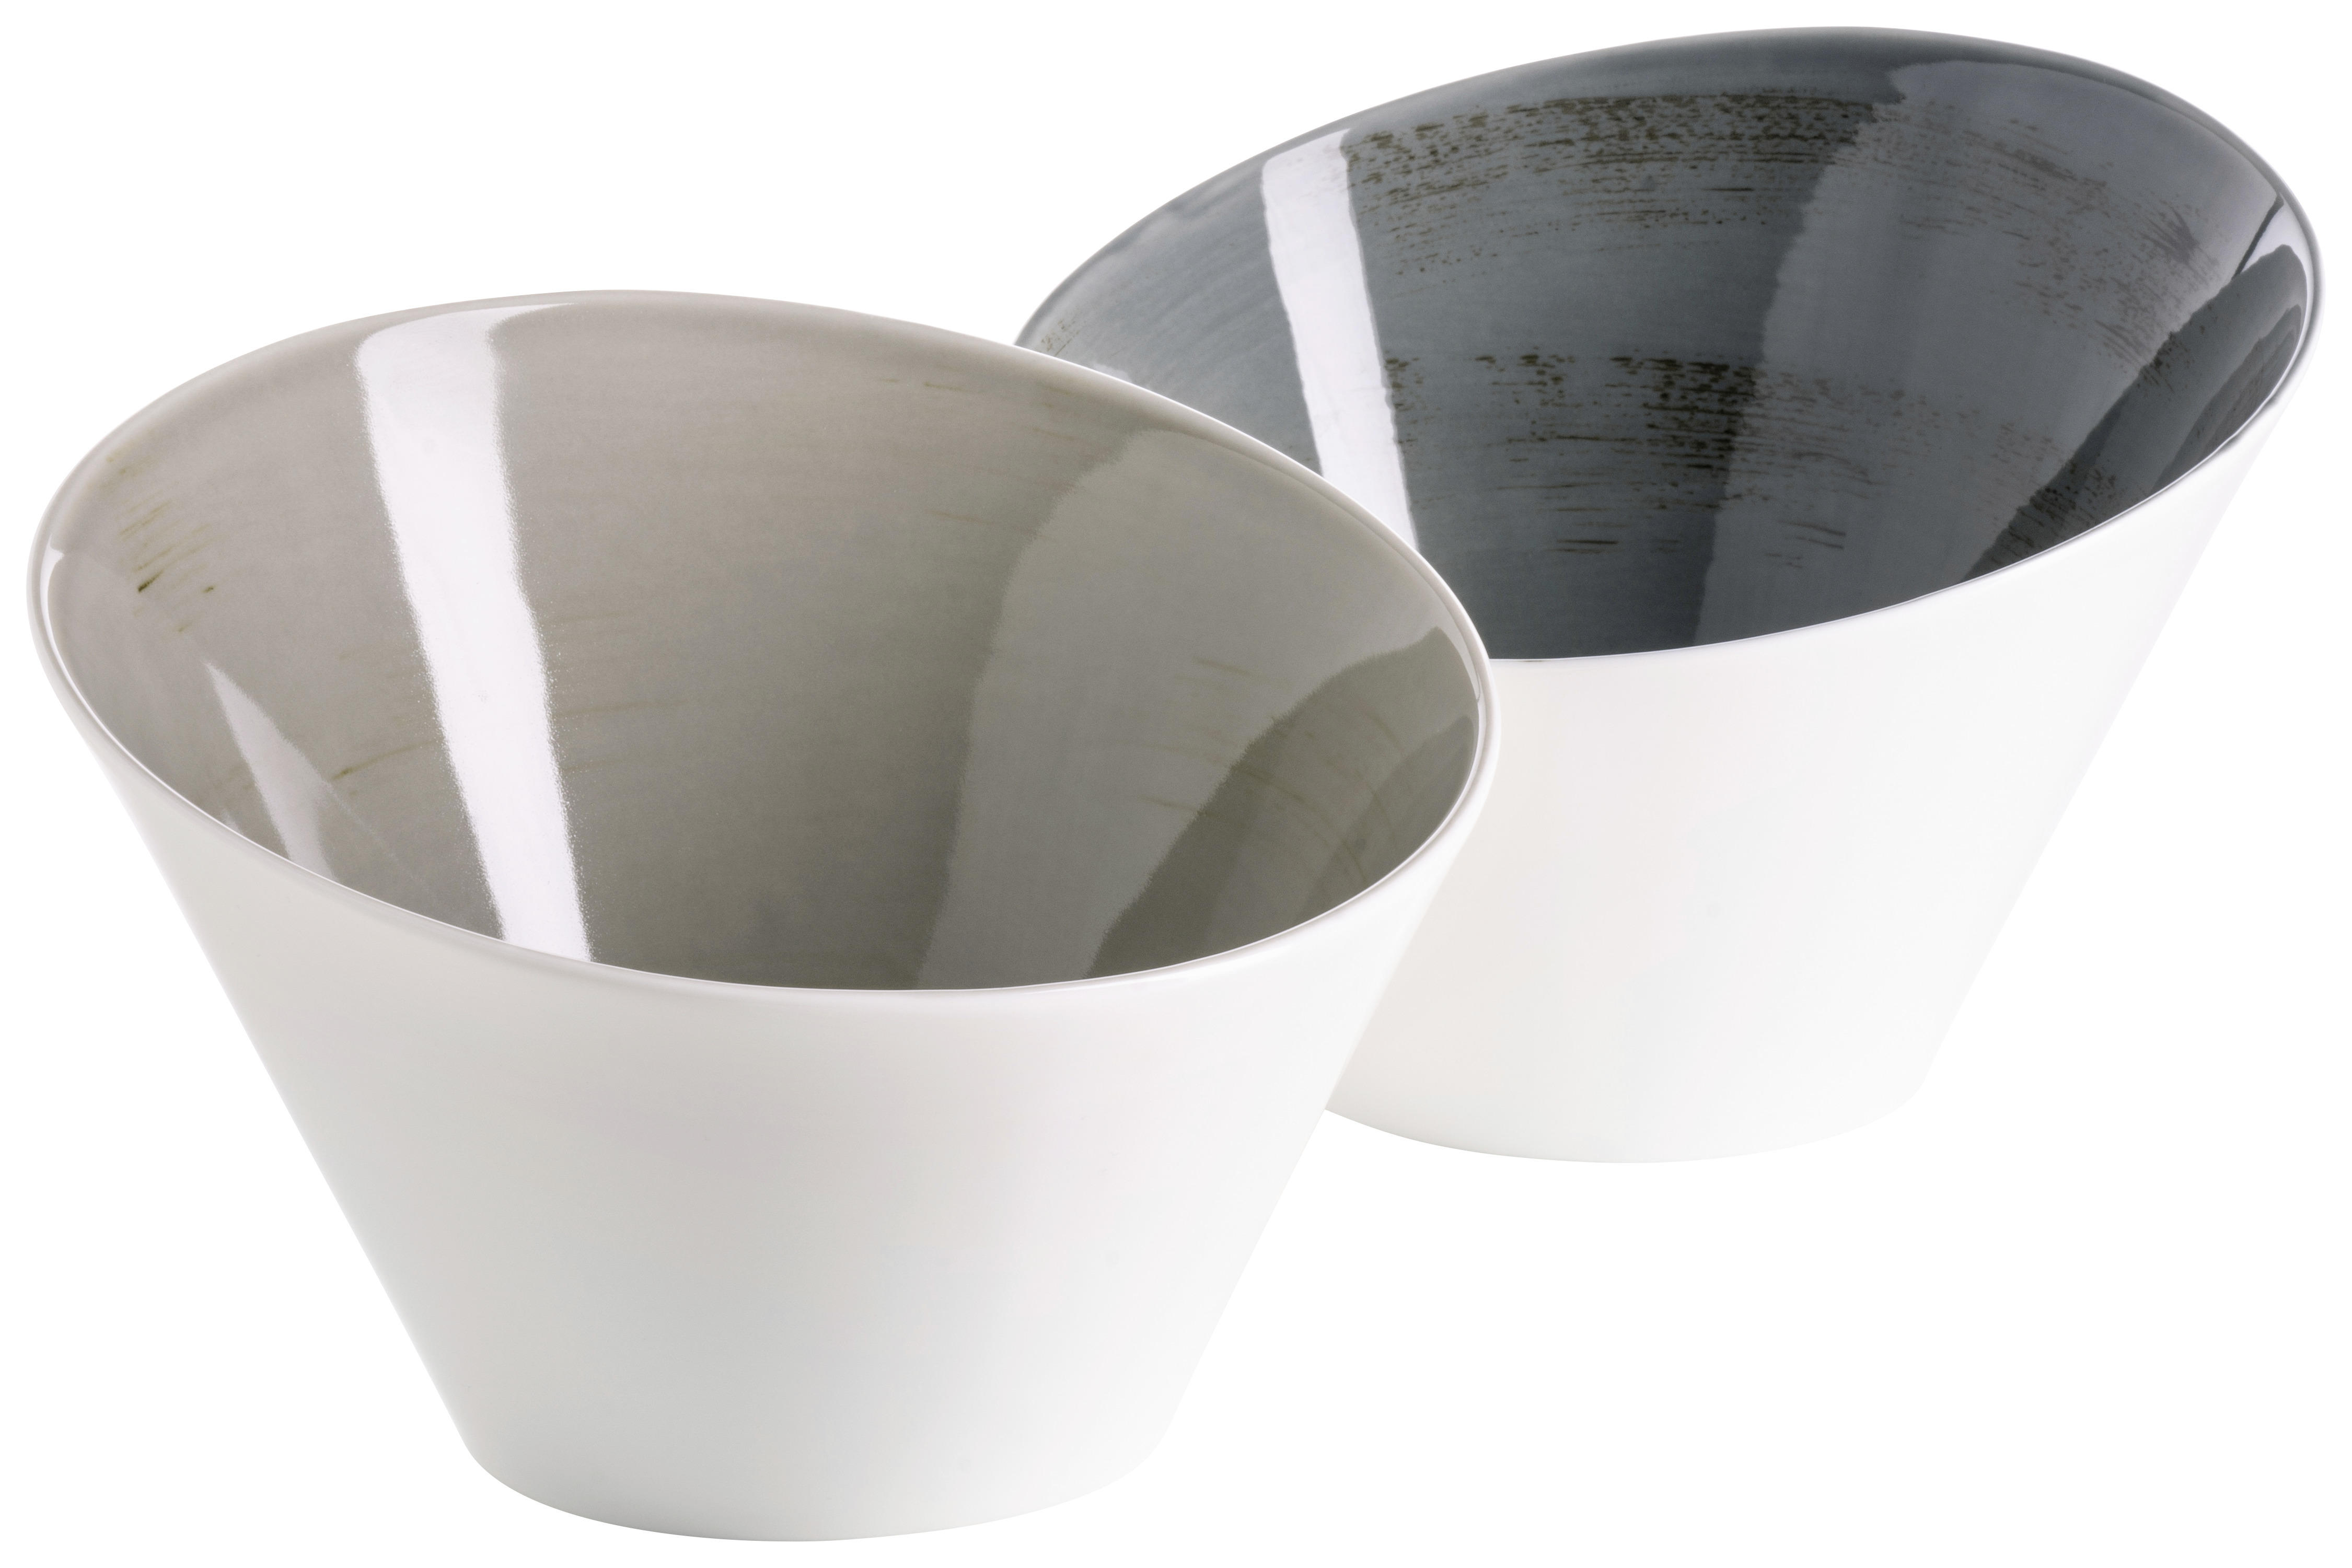 SCHÜSSELSET Keramik Porzellan 2-teilig  - Hellgrau/Weiß, Basics, Keramik (22/22/16,5cm) - Mäser